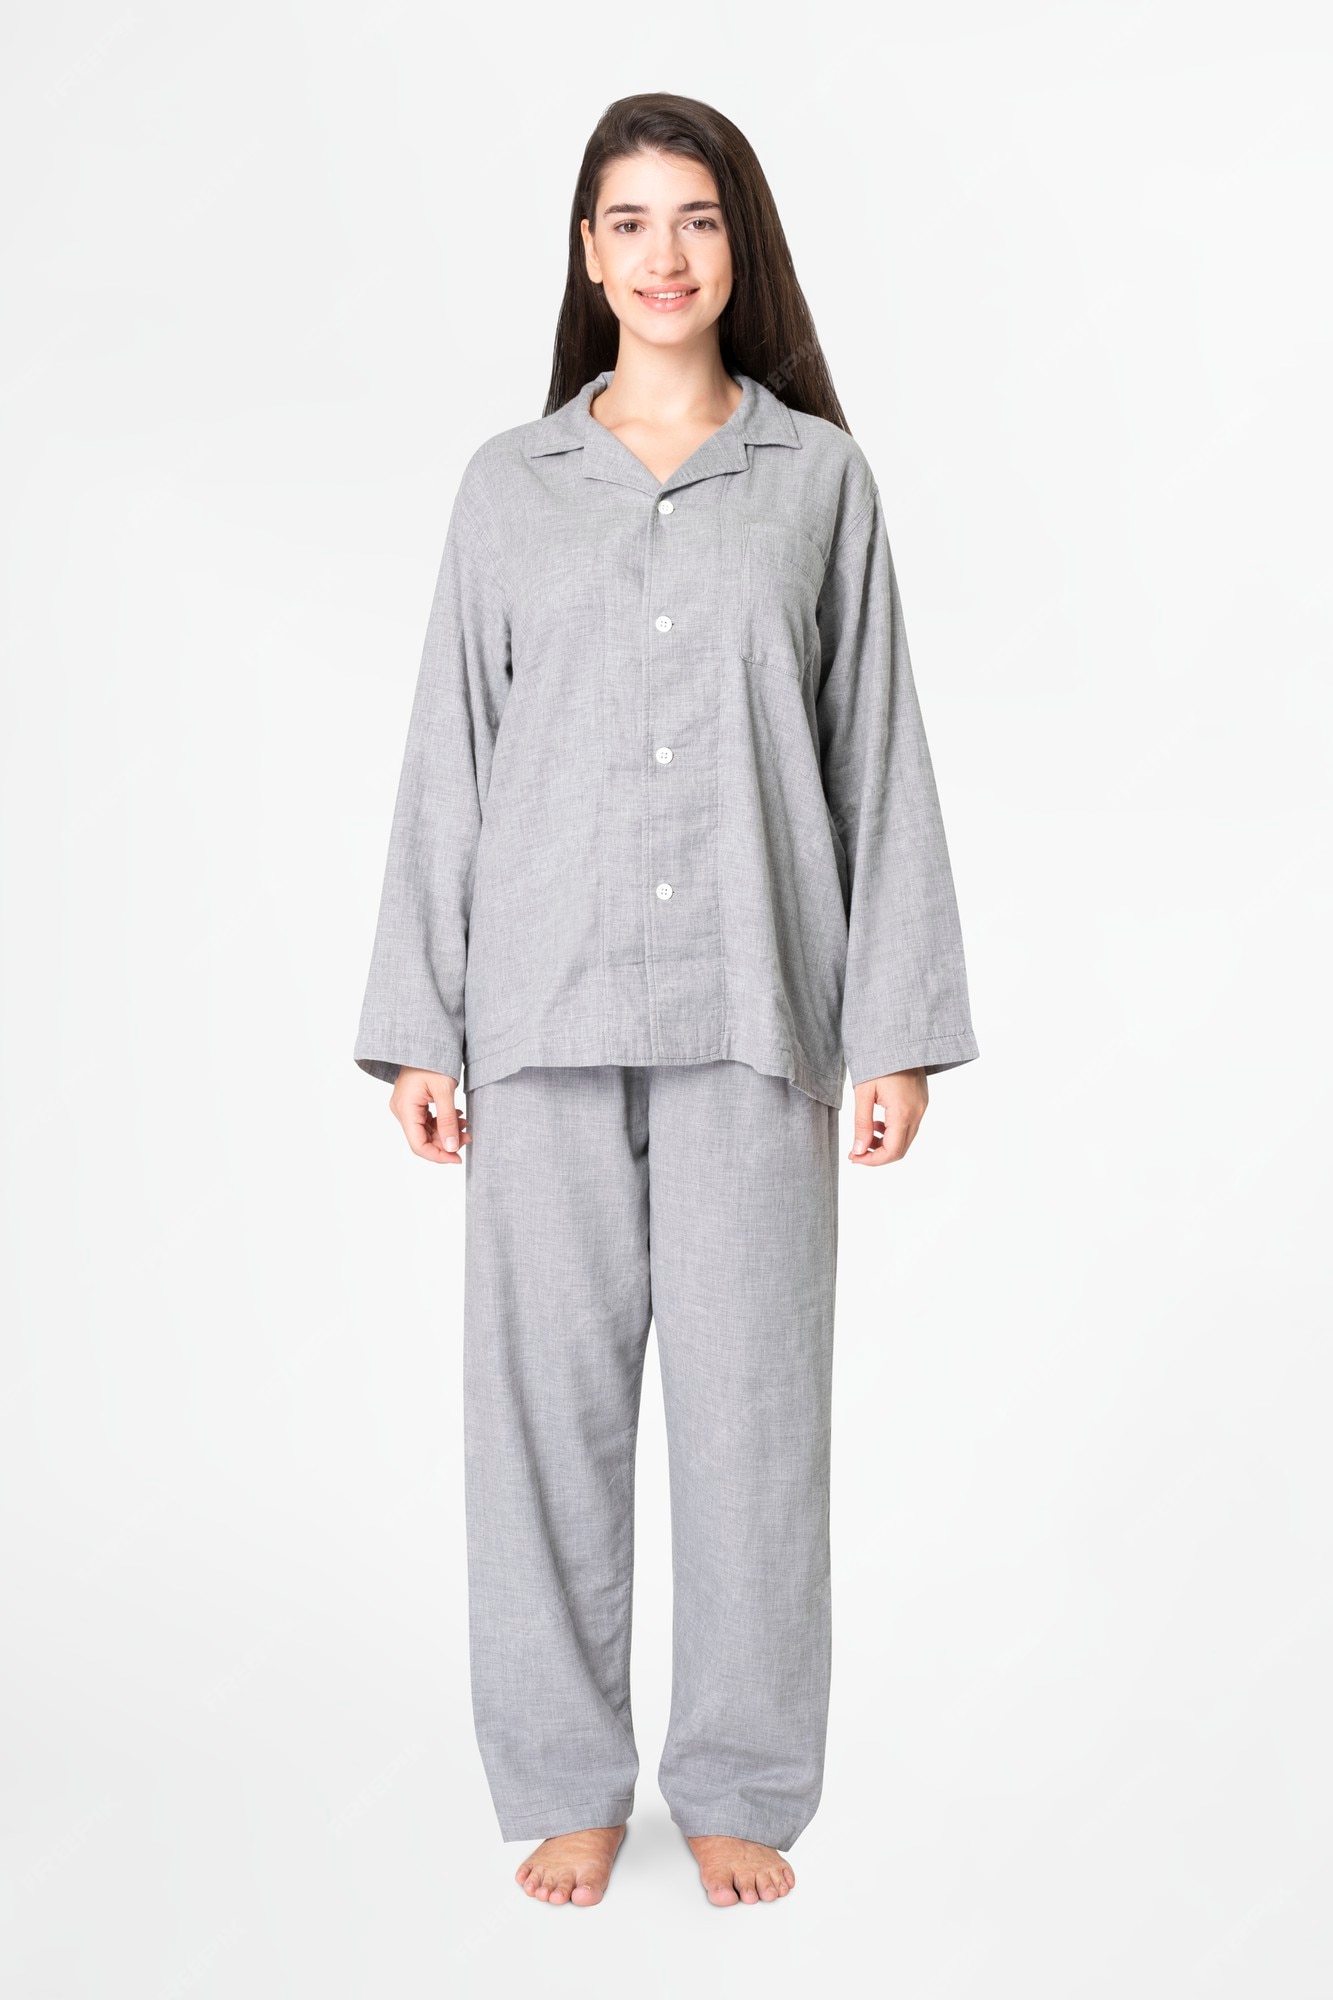 Mujer en pijama gris ropa de dormir ropa de cuerpo completo Foto Gratis